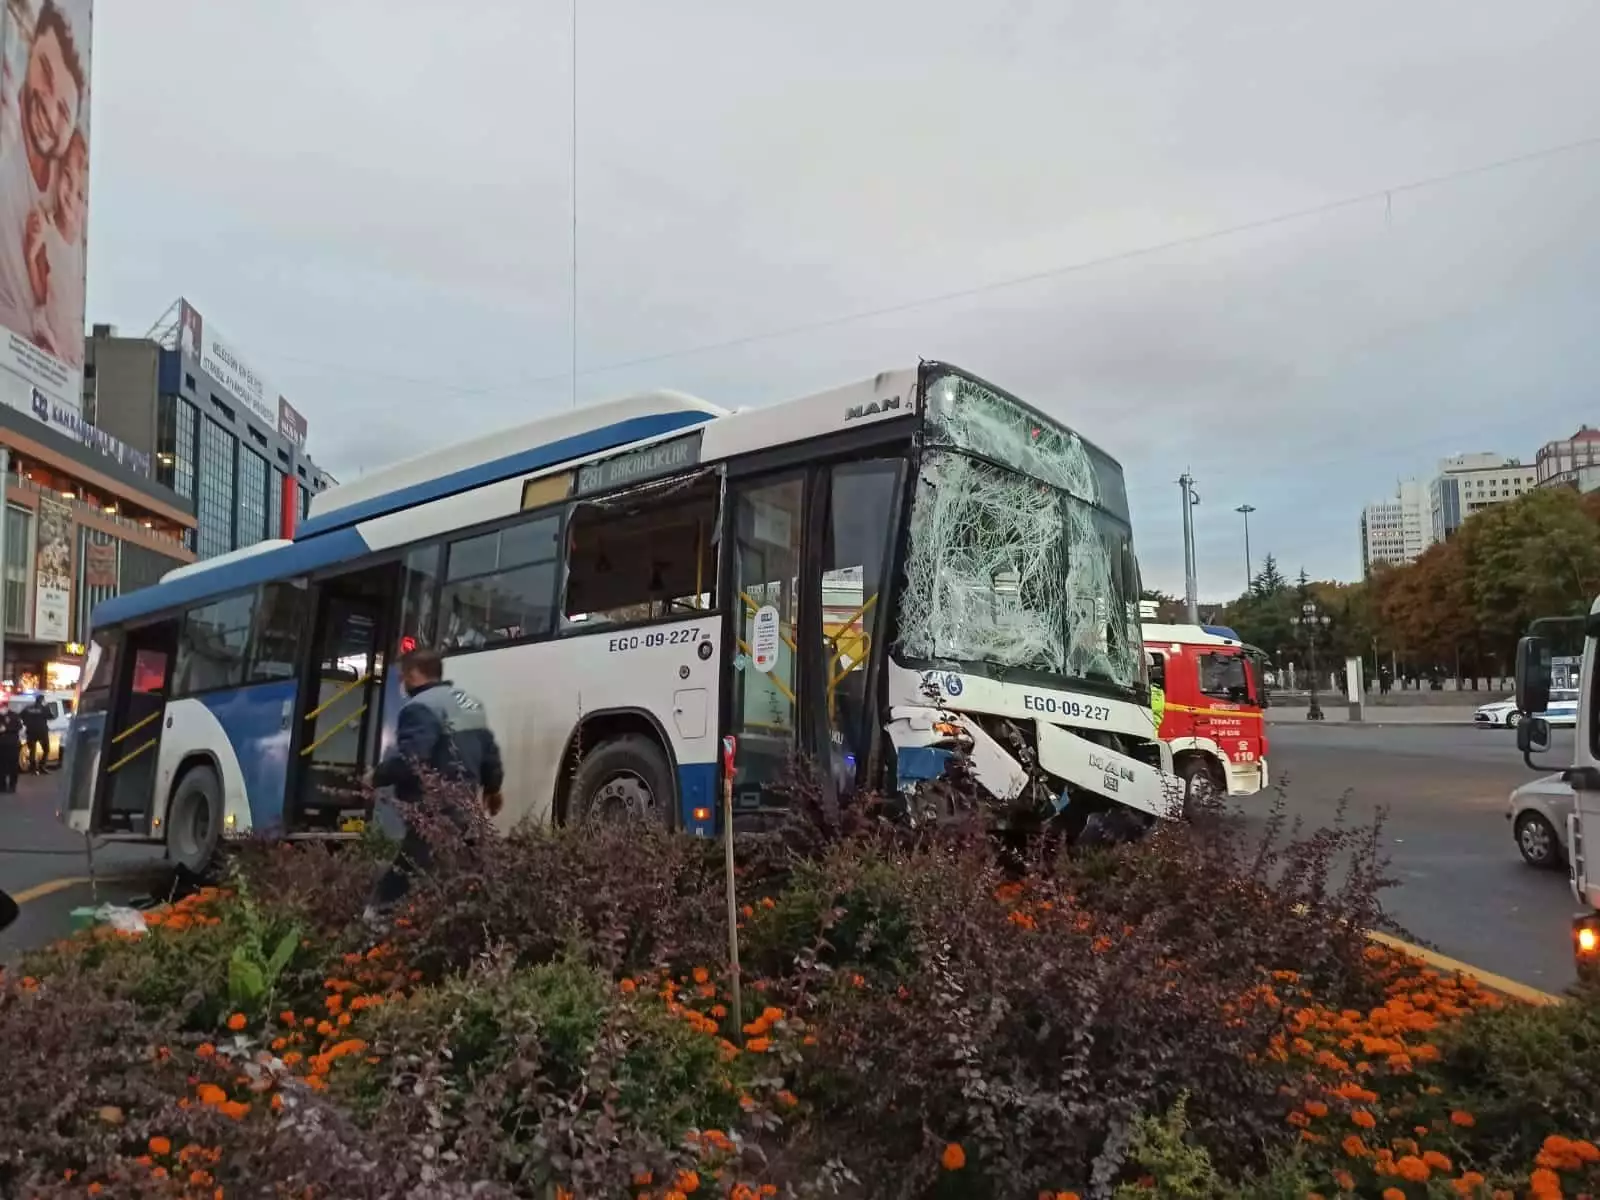 Ankara kızılay'da, iki otobüs çarpıştı özel halk otobüsü kavşakta ankara büyükşehir belediyesi'ne ait ego otobüsüne çarptı, kazada 17 kişi yaralandı.